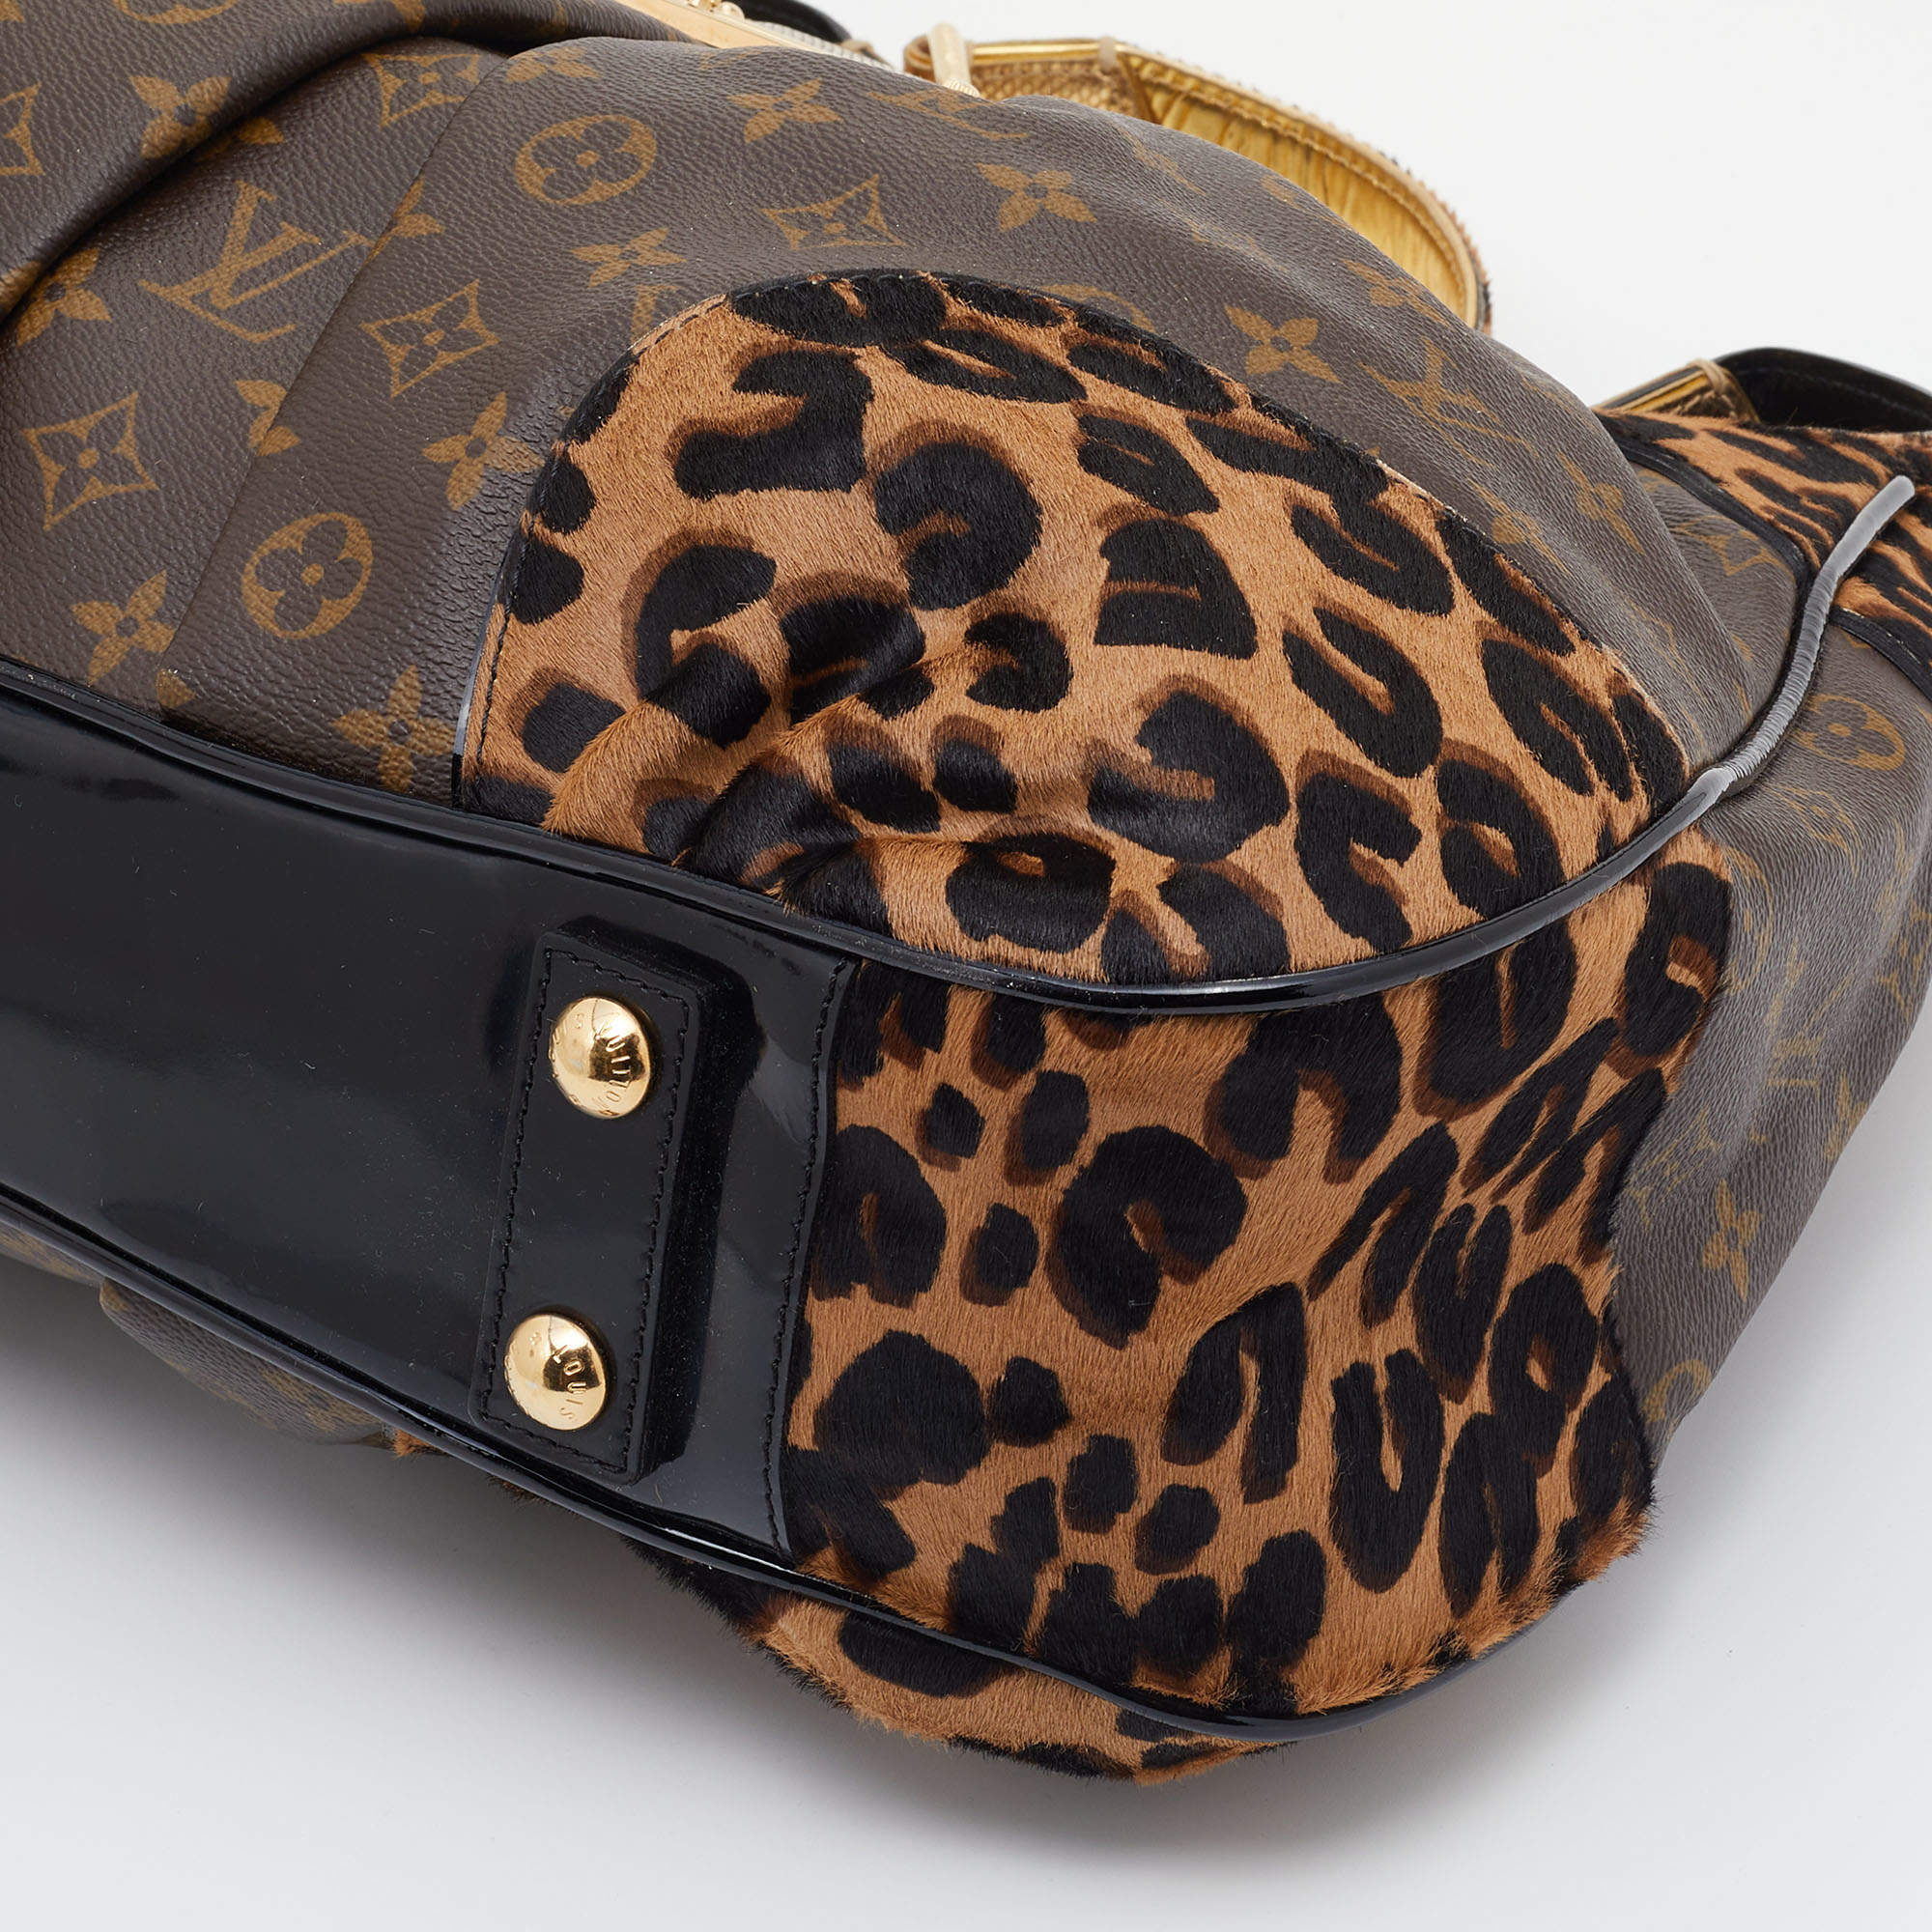 Louis Vuitton Women's Leather Leopard Print Pants – Luxuria & Co.